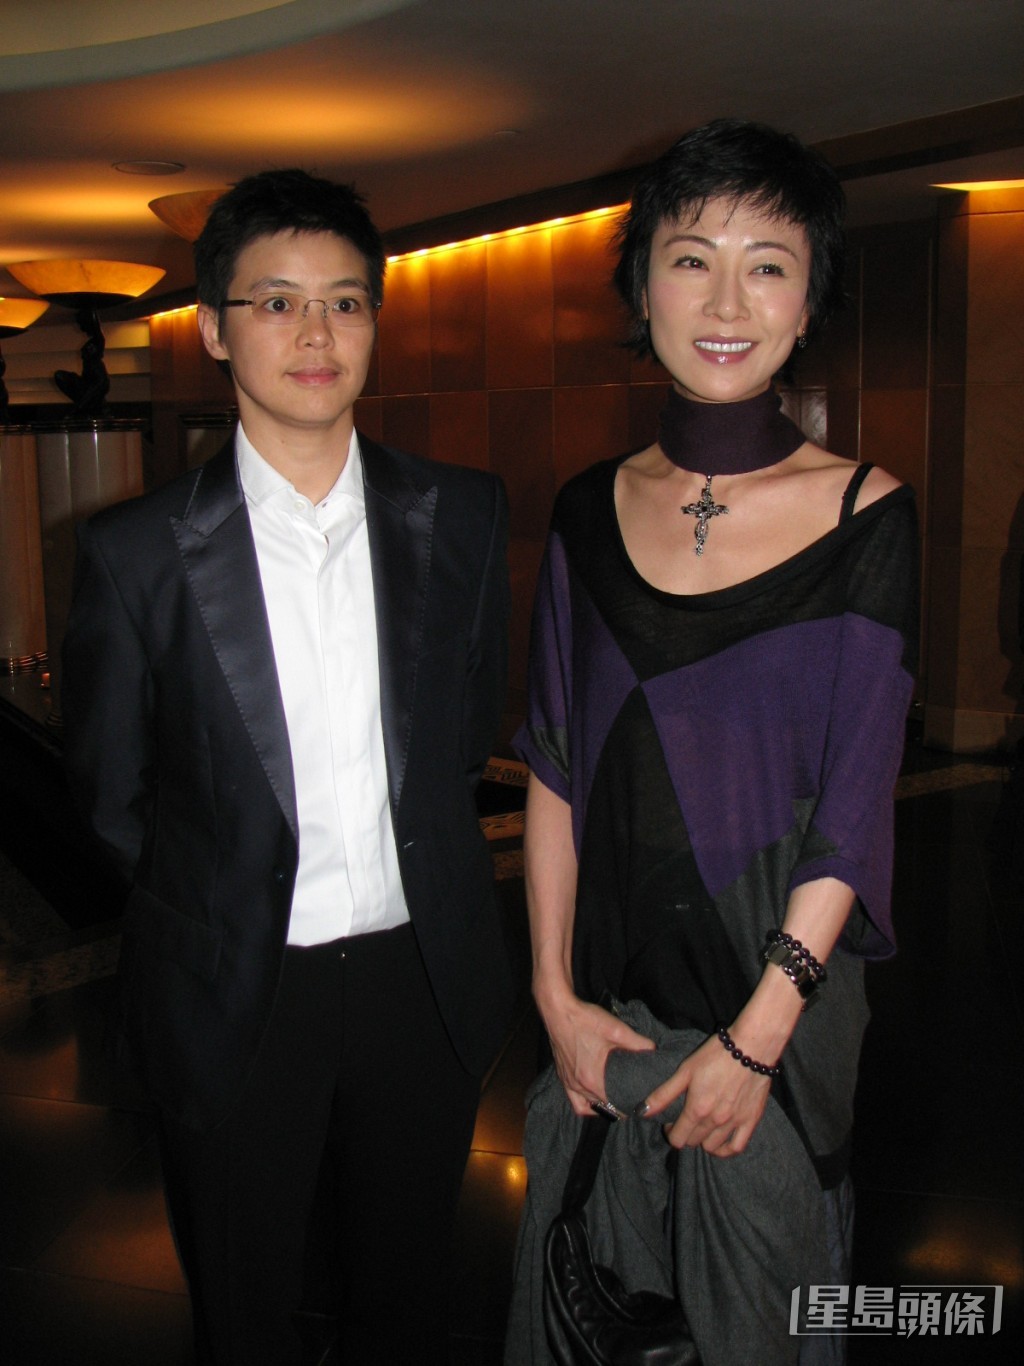 袁洁莹（右）早年传与同性密友阮嘉欣展开7年恋人关系，但二人于2012年因性格不合分手。